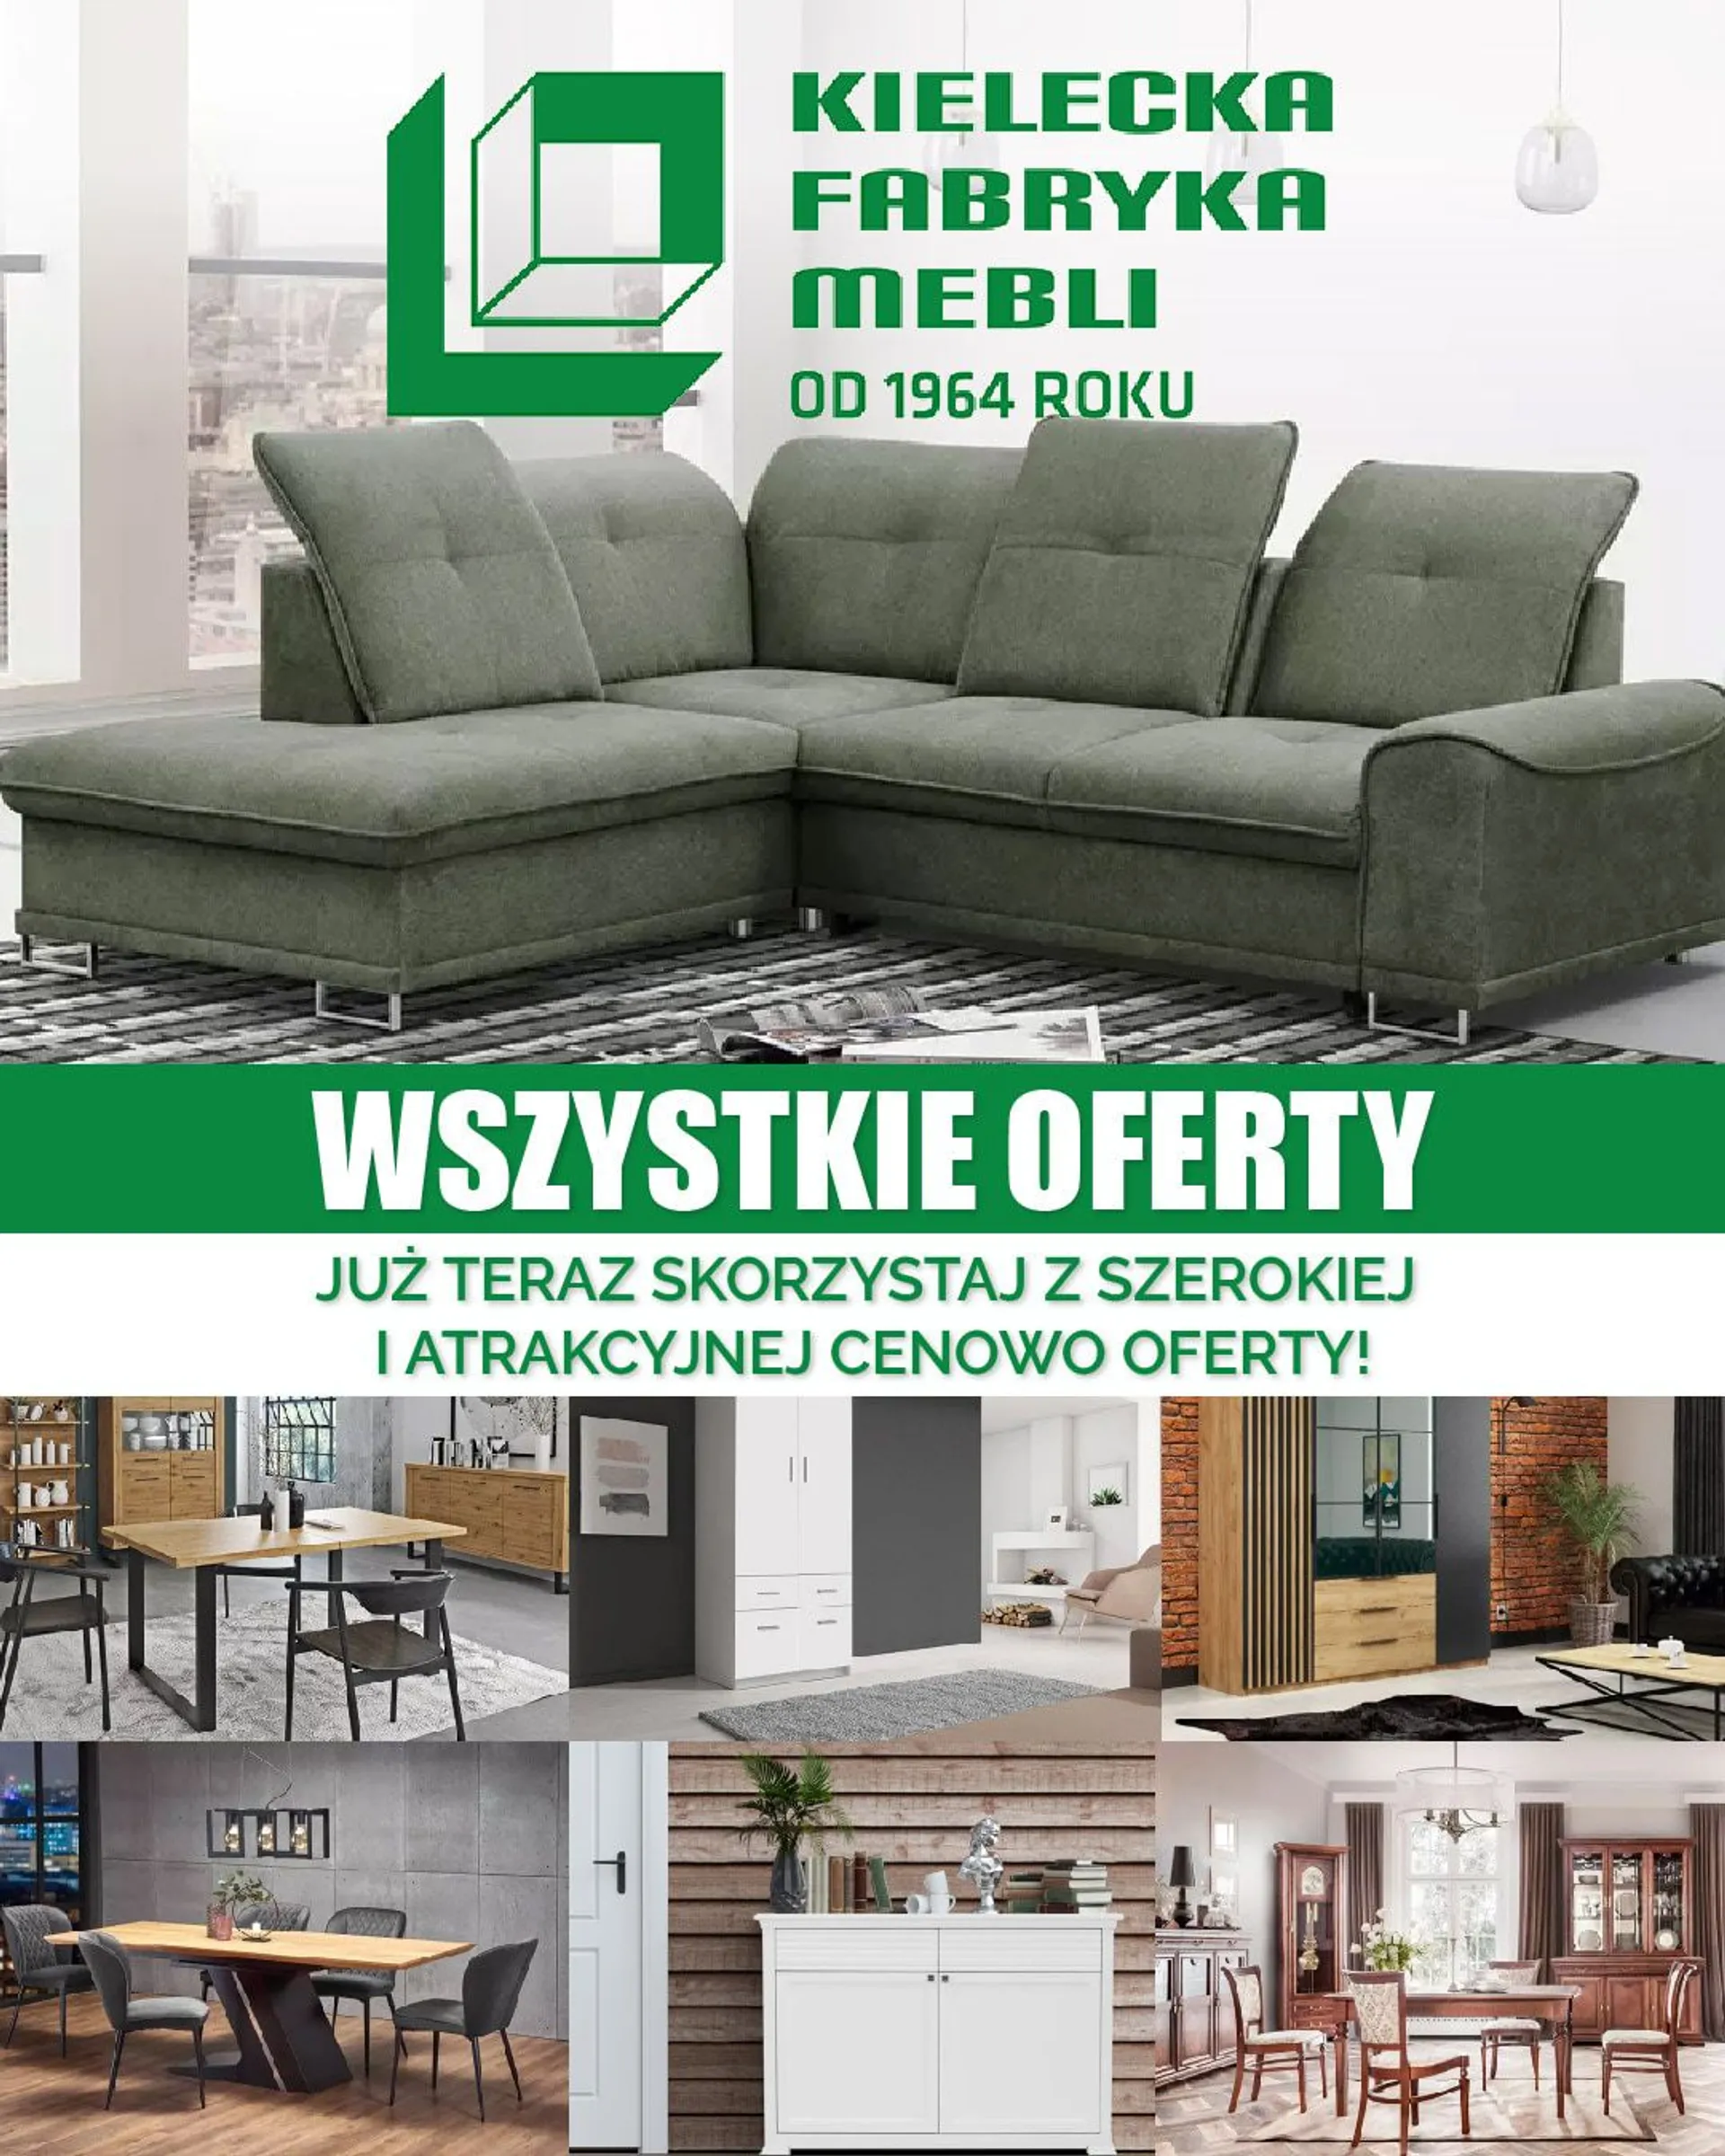 Kielecka Fabryka Mebli - Meble